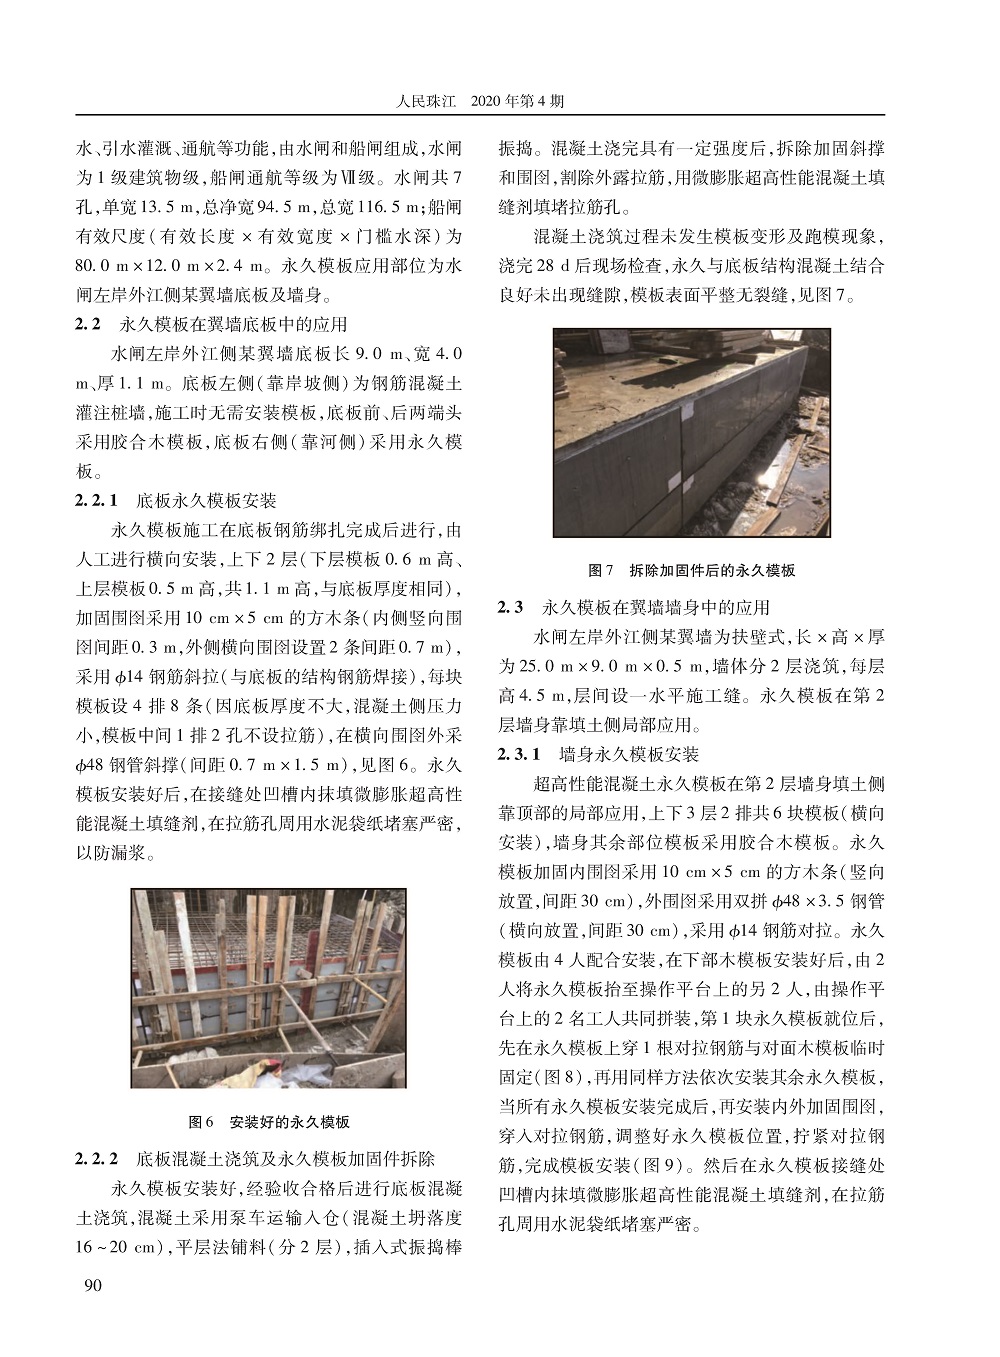 超高性能混凝土永久模板研制及初步应用_页面_4